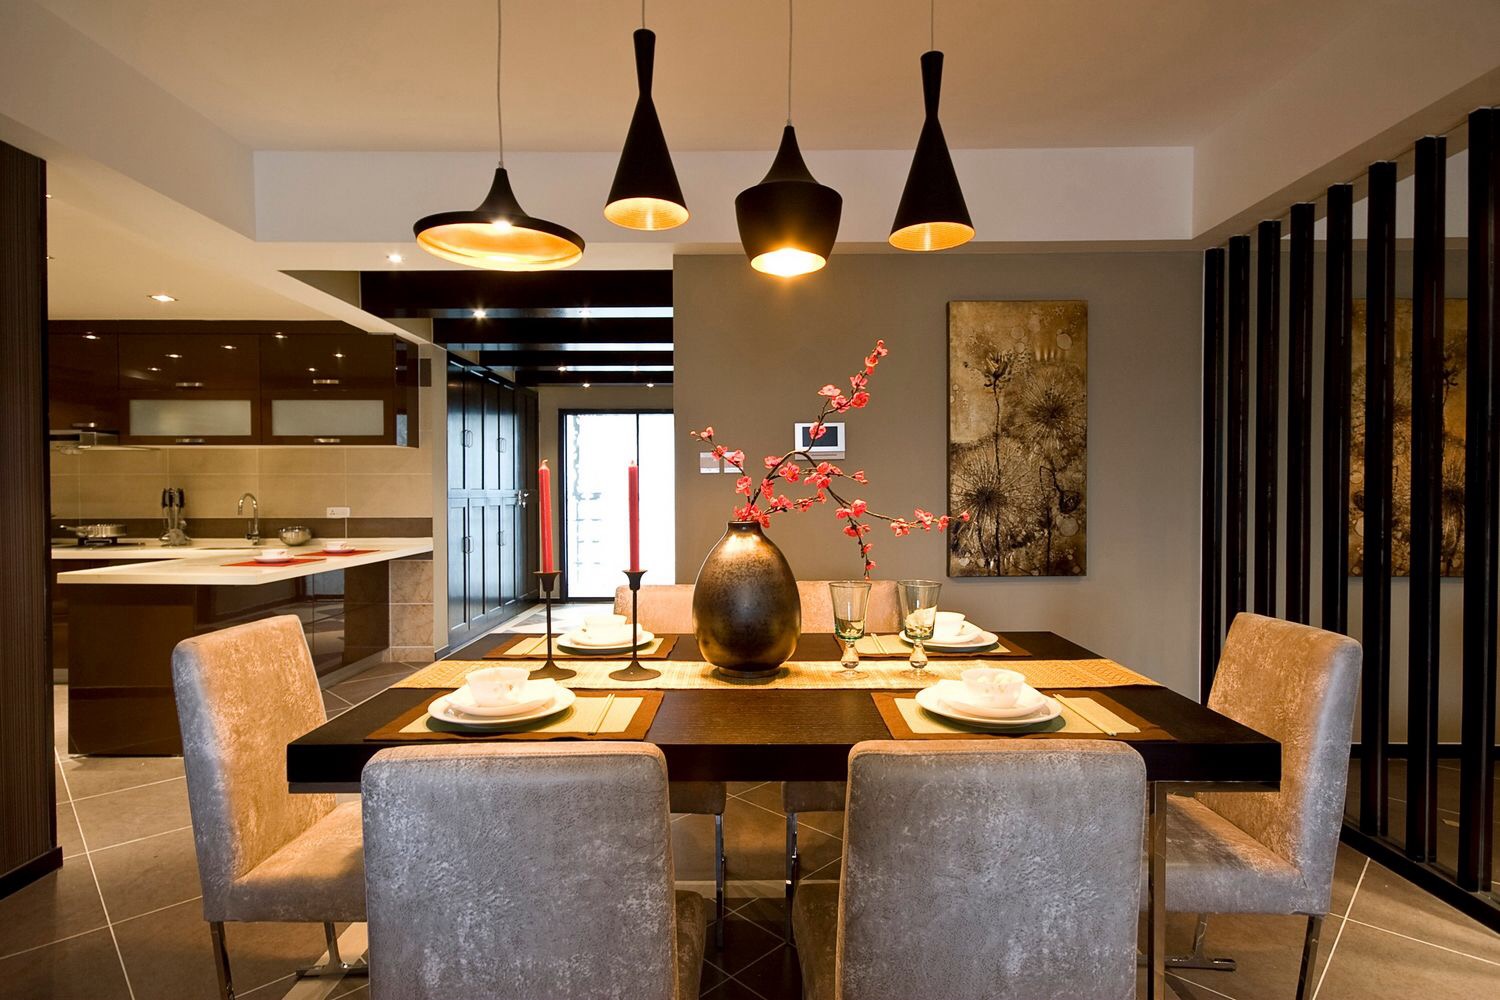 新中式 现代 造型 优美 质感 轻松 灵动感 餐厅图片来自美颂雅庭装饰在银湖翡翠演绎现代中式的分享